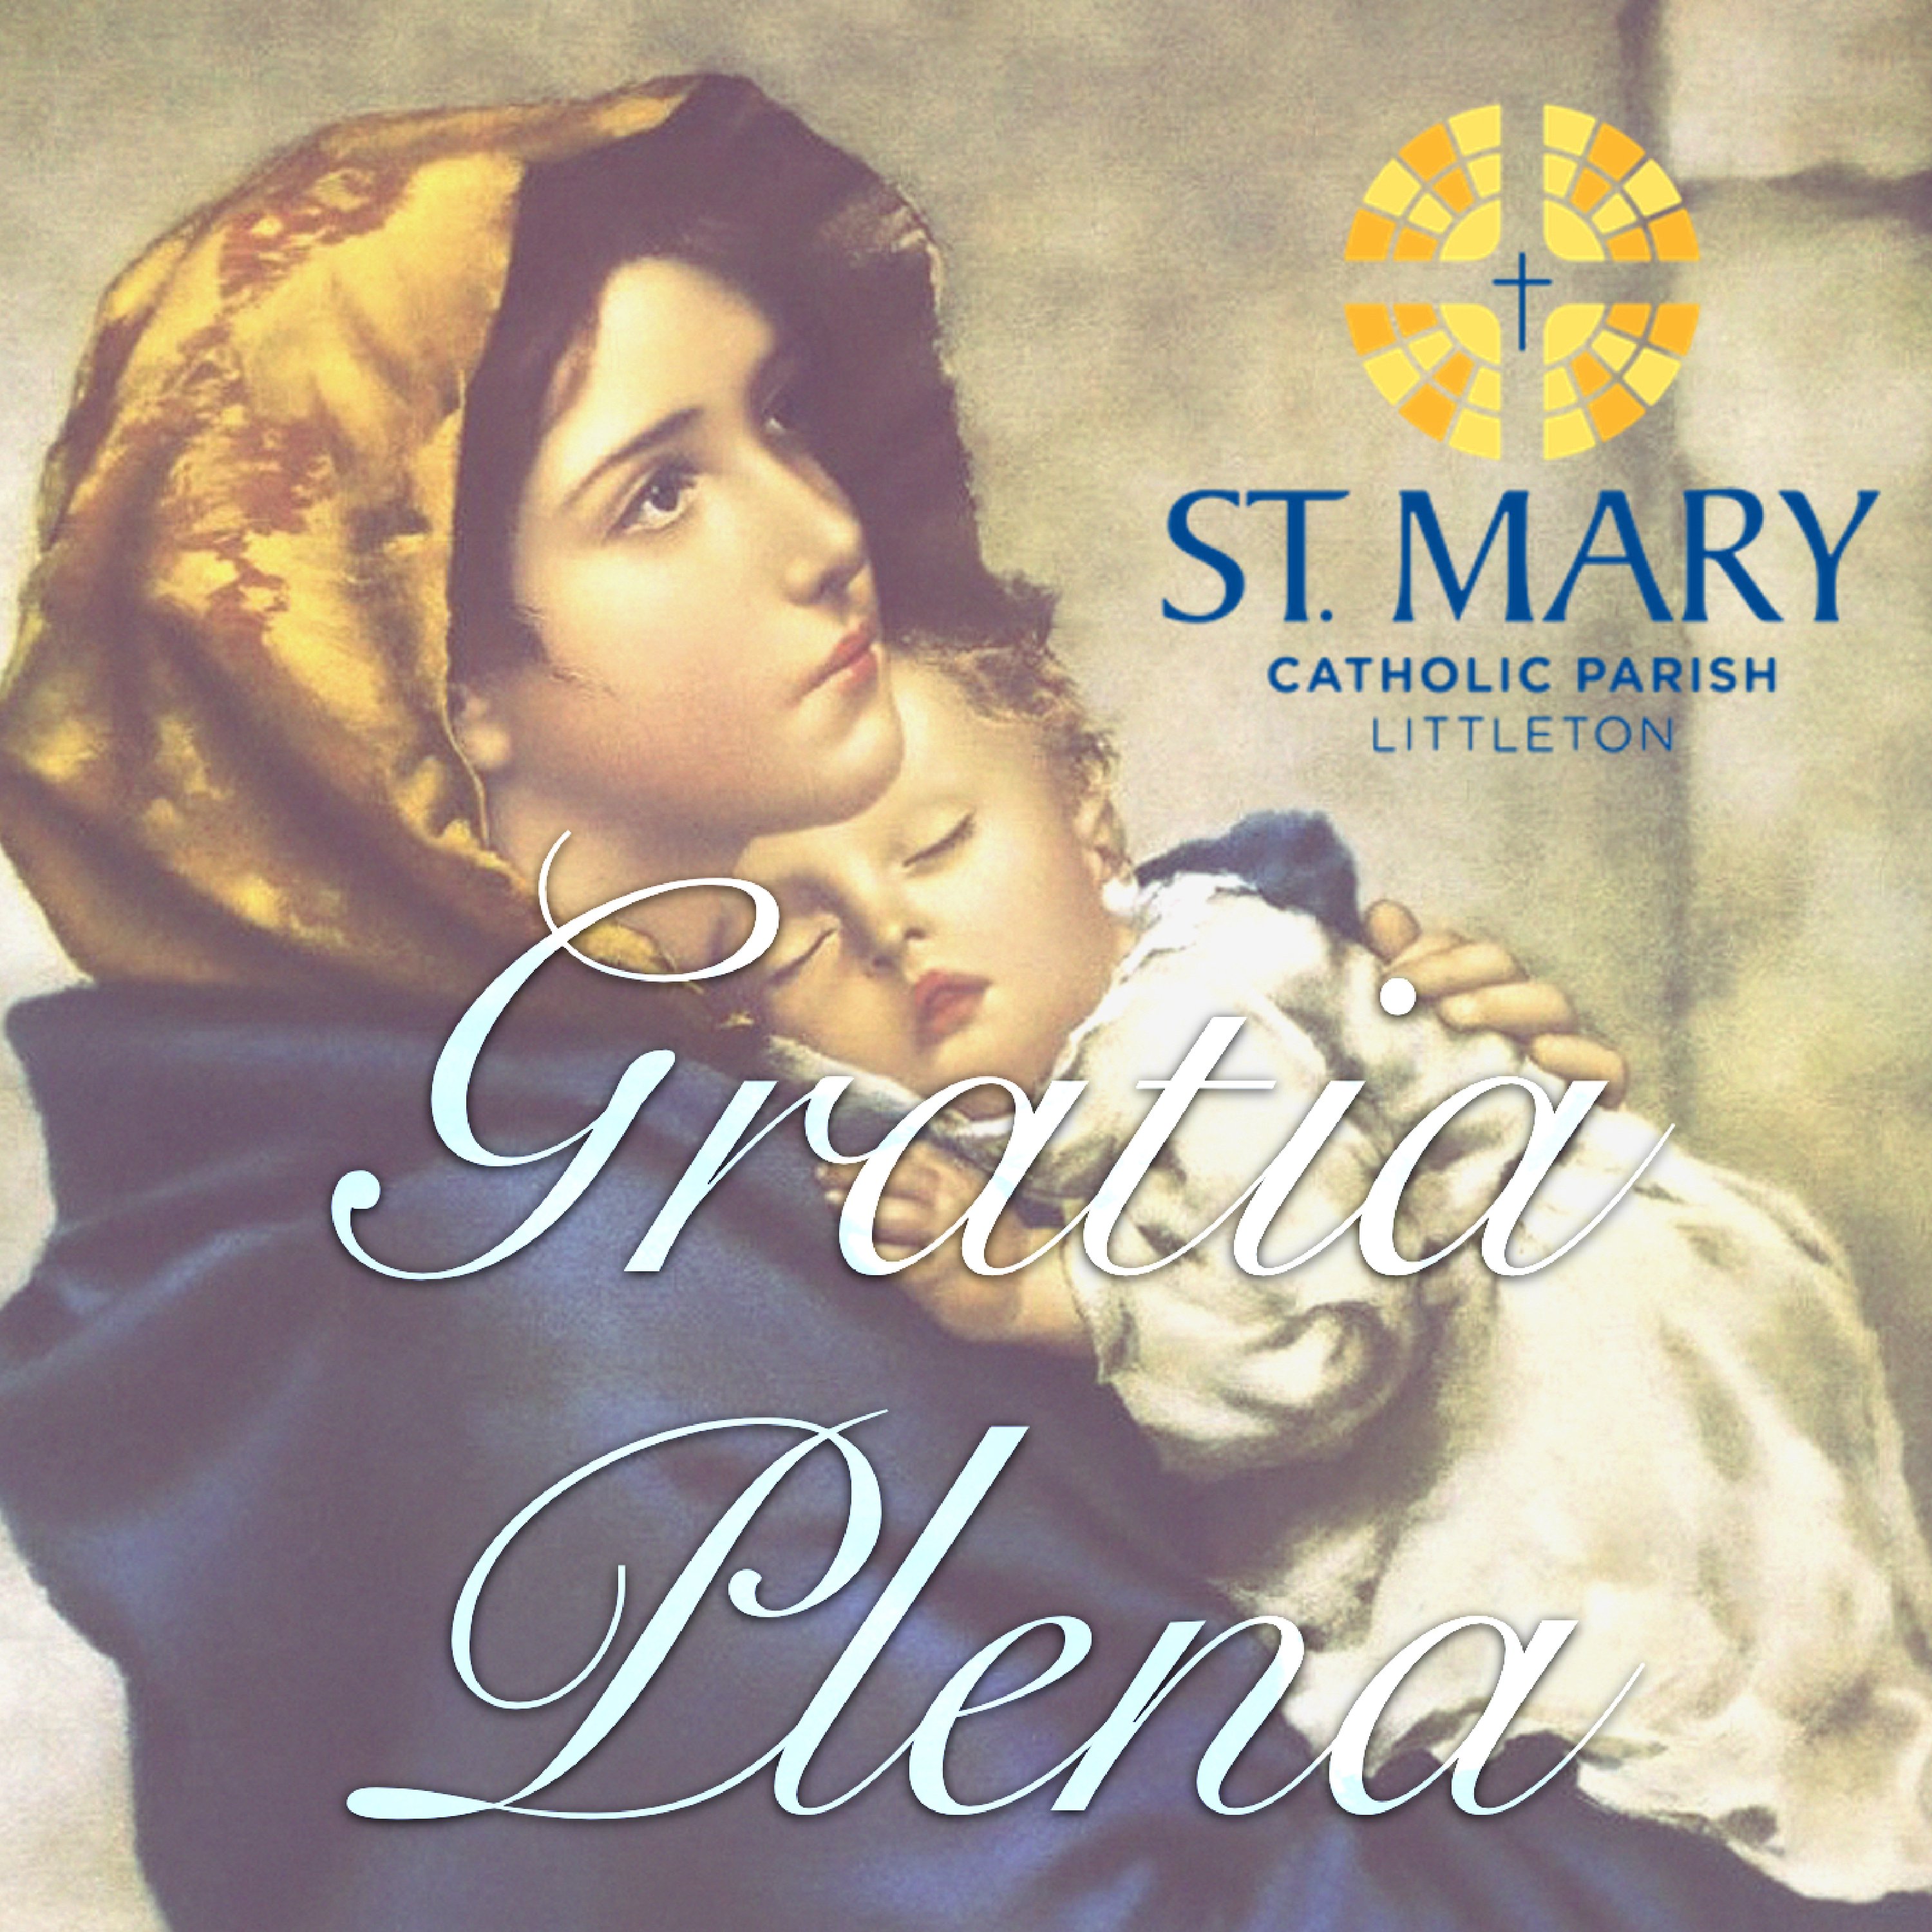 Gratia Plena: A St. Mary Catholic Parish Podcast